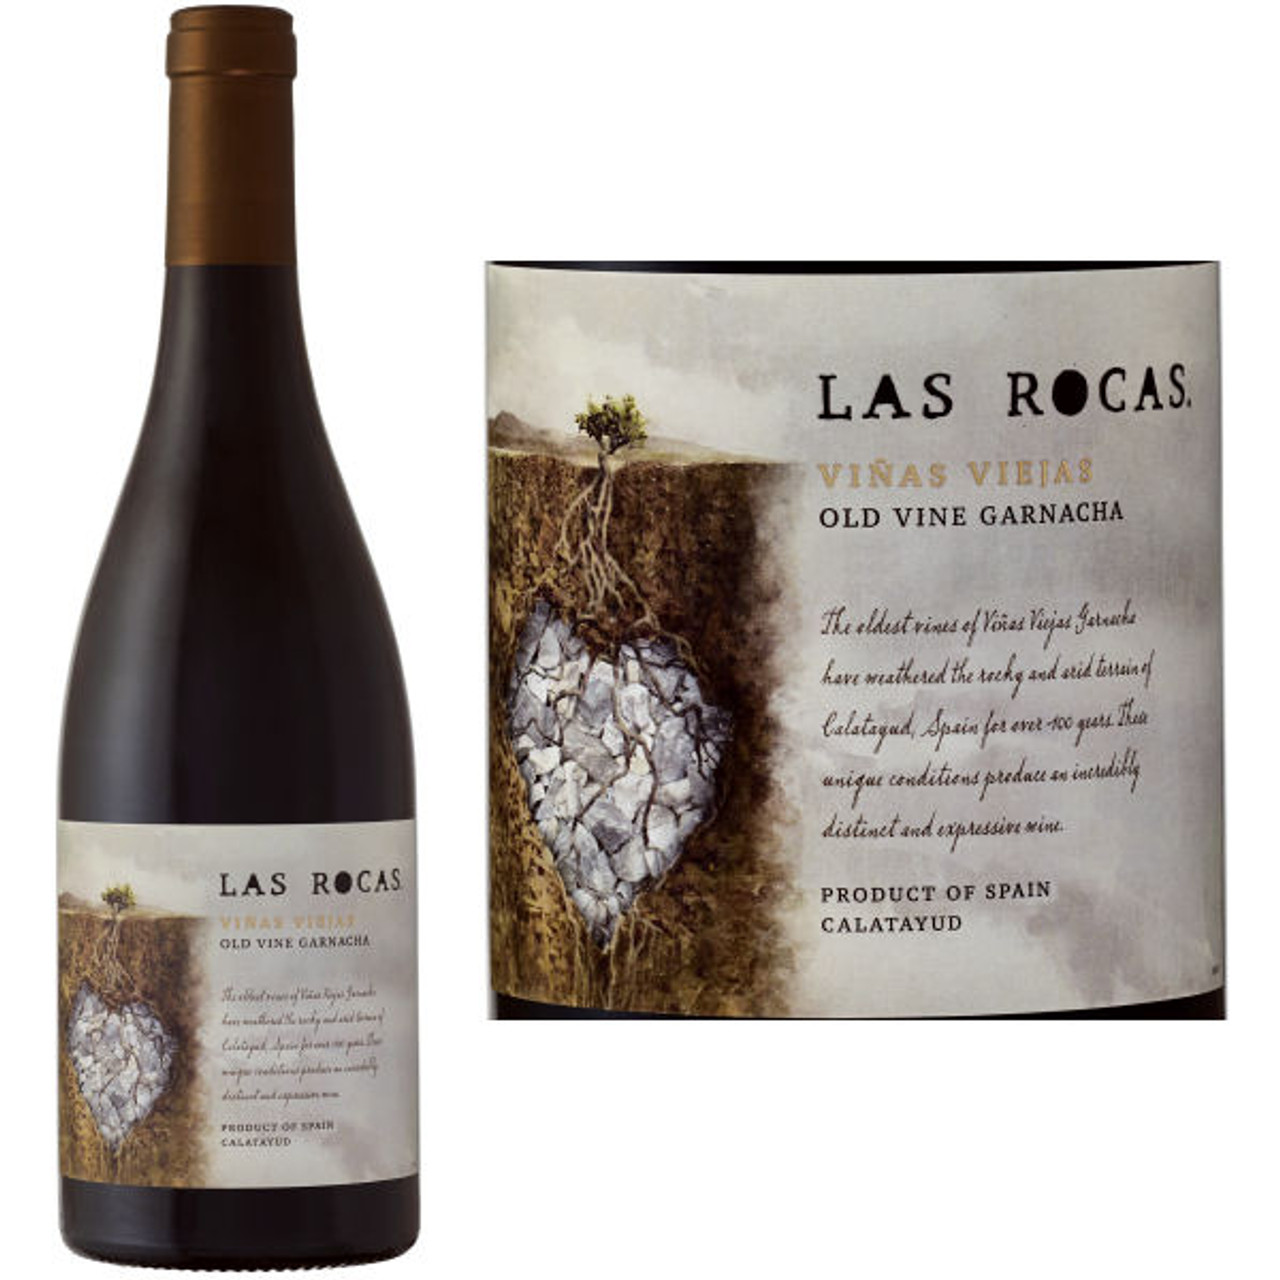 Las Rocas Vinas Viejas 老藤歌海娜 2015